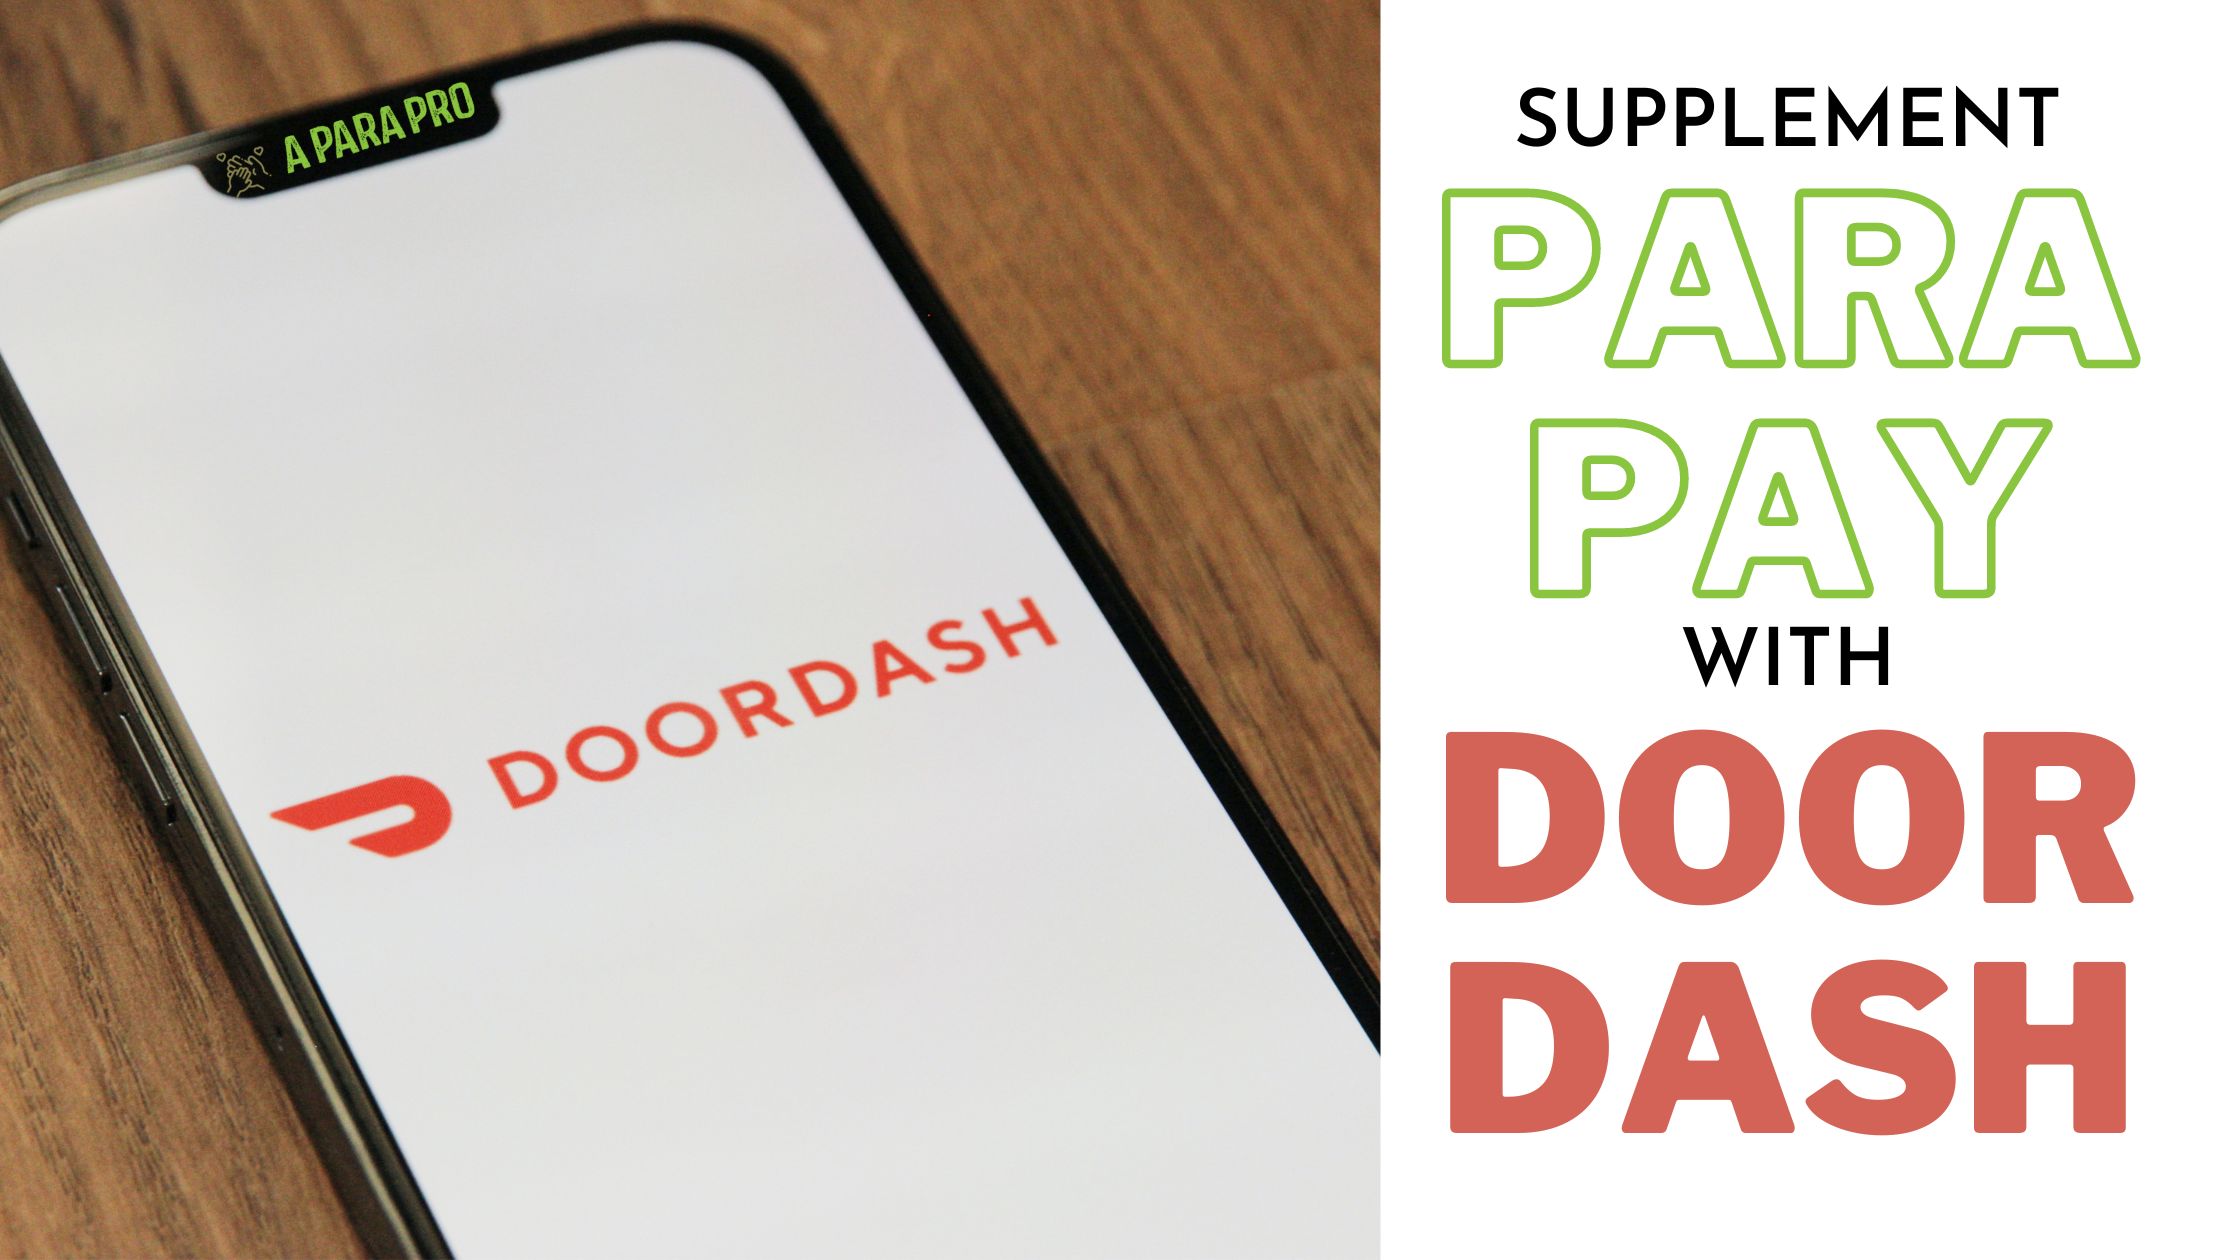 Paraeducators supplement para pay using door dash